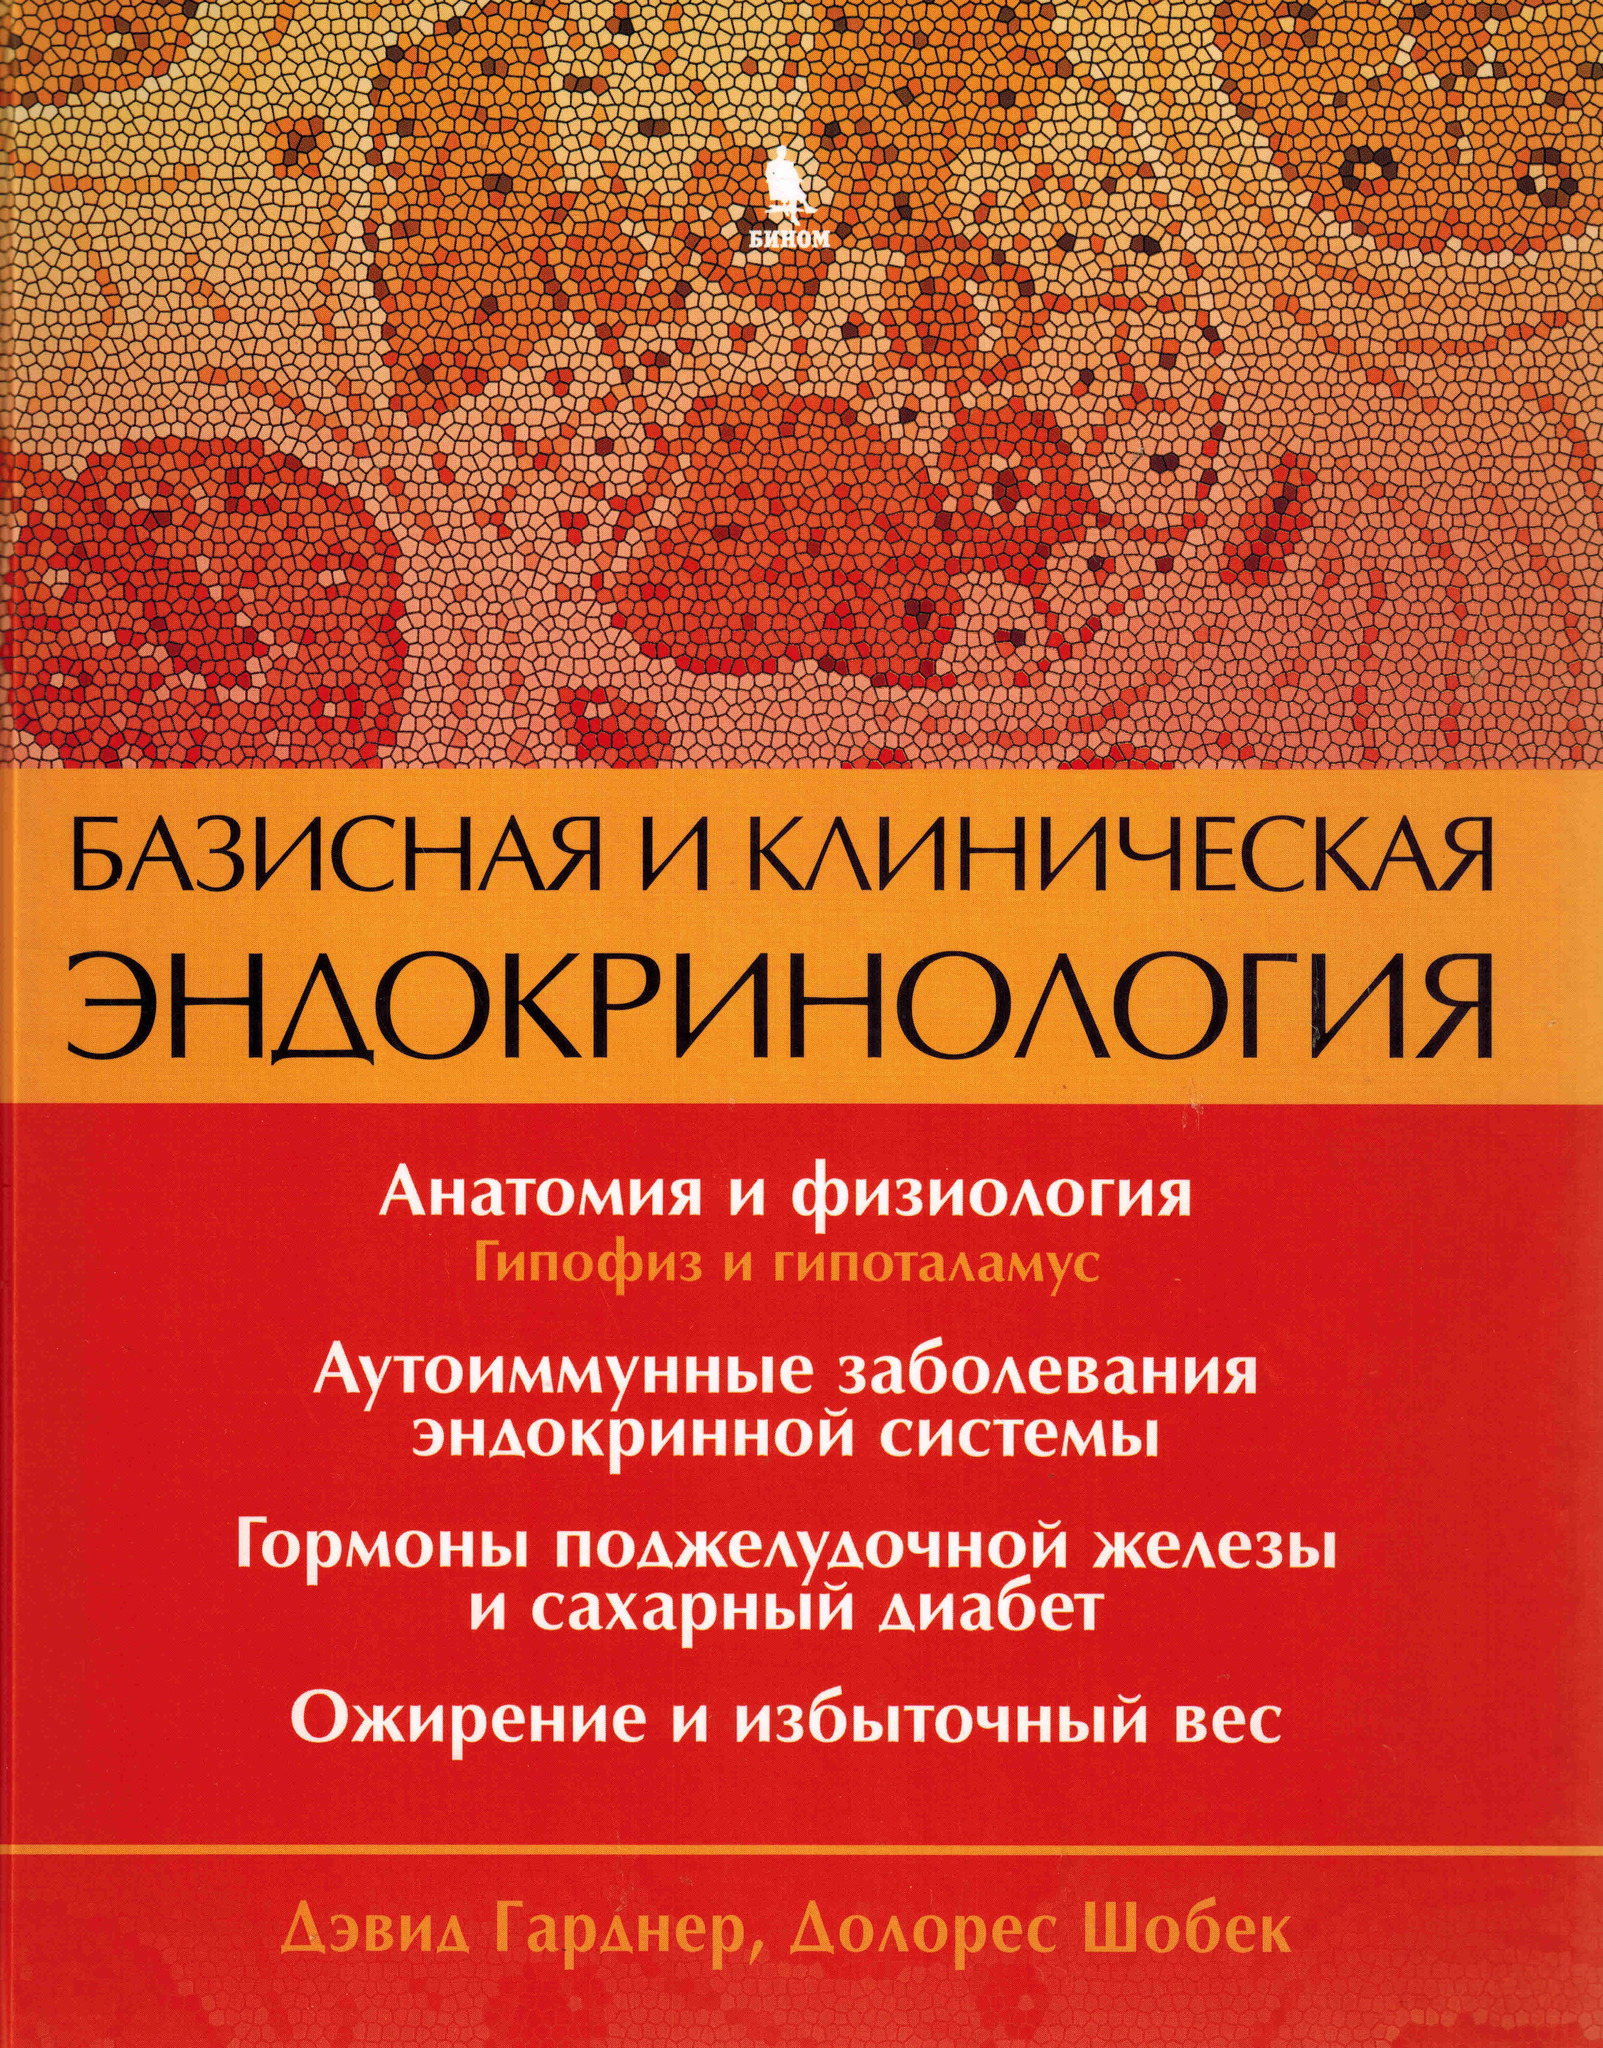 Книги по эндокринологии Базисная и клиническая эндокринология. Книга 1 baz_endokrin_kn1.jpg